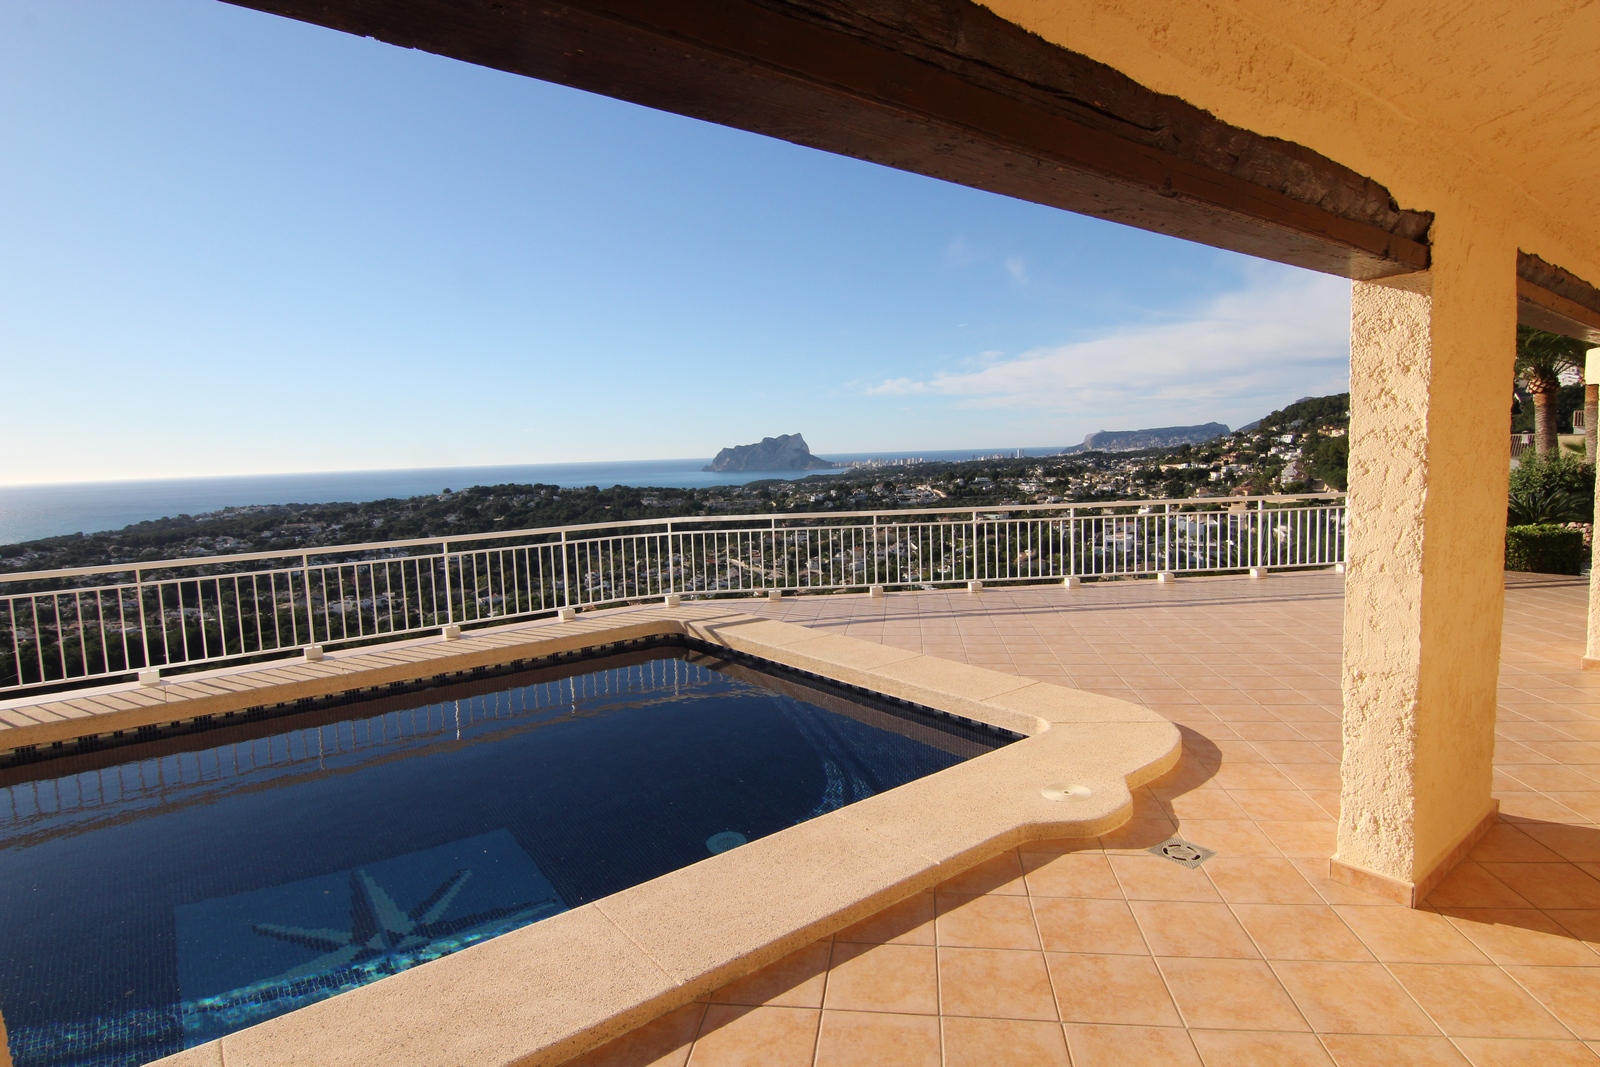 Villa a la venta con impresionantes vistas, dos parcelas y piscina.